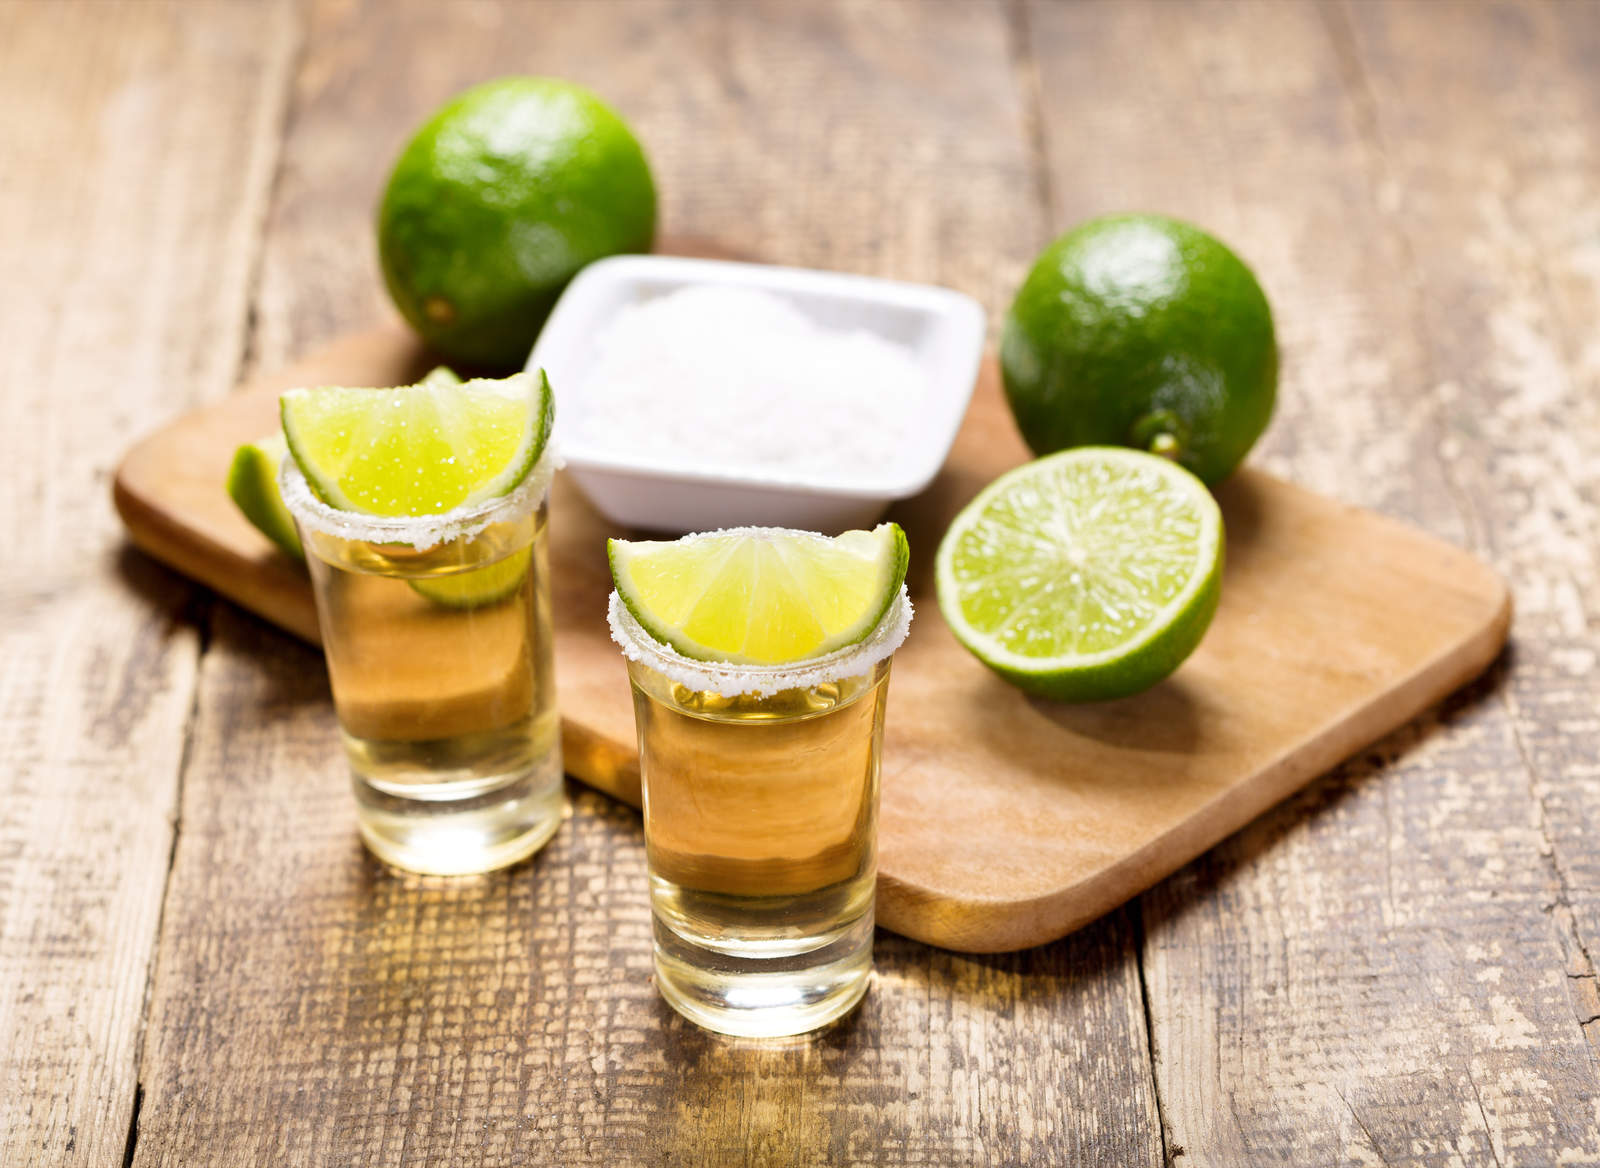 El tequila puede ayudar a bajar de peso, revela estudio